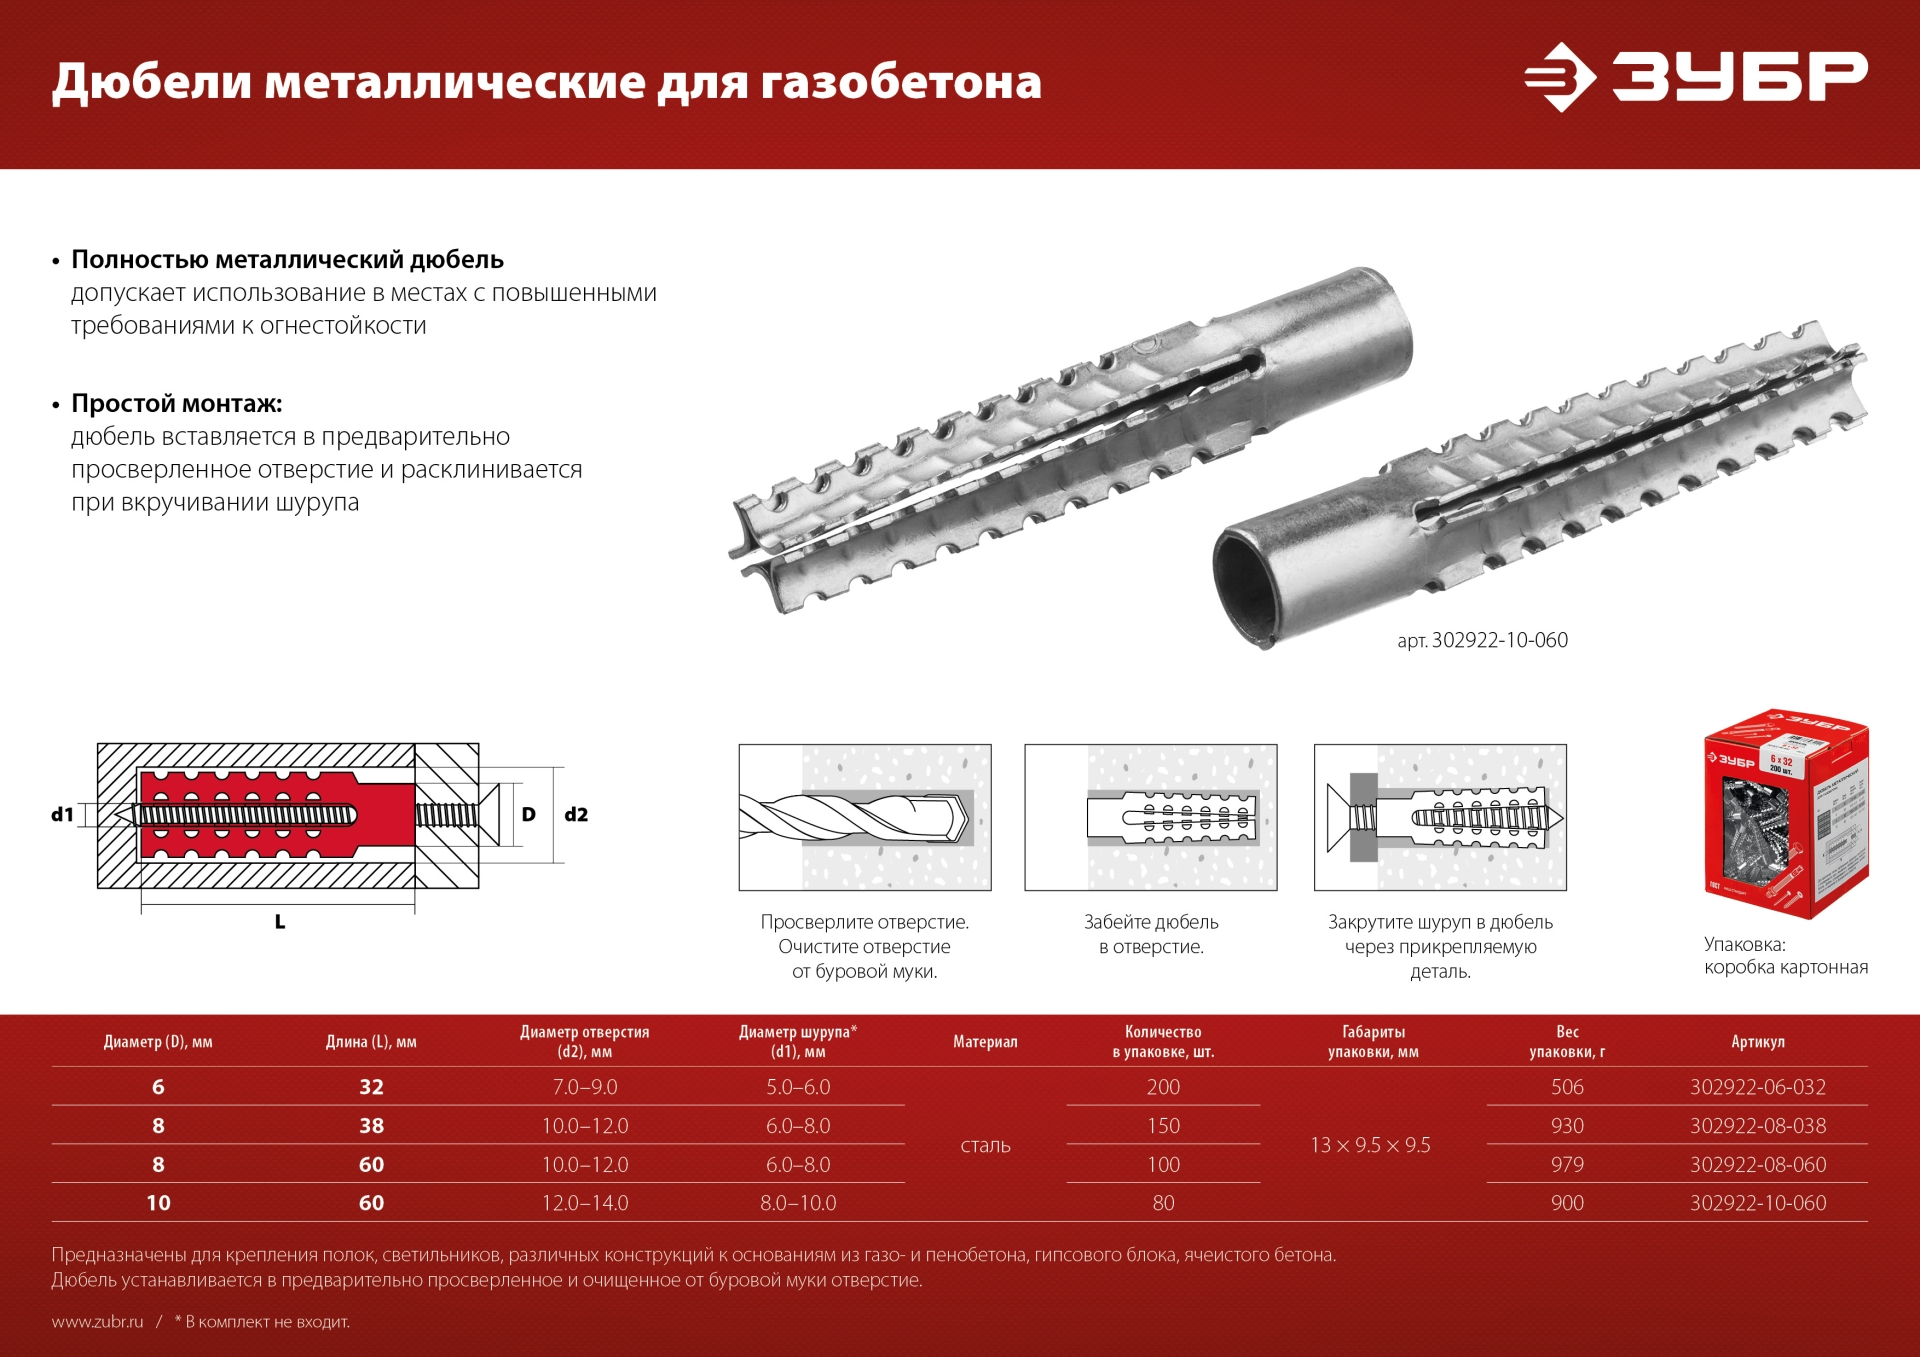 ЗУБР 6 х 32 мм, 200 шт, металлический дюбель для газобетона (302922-06-032)